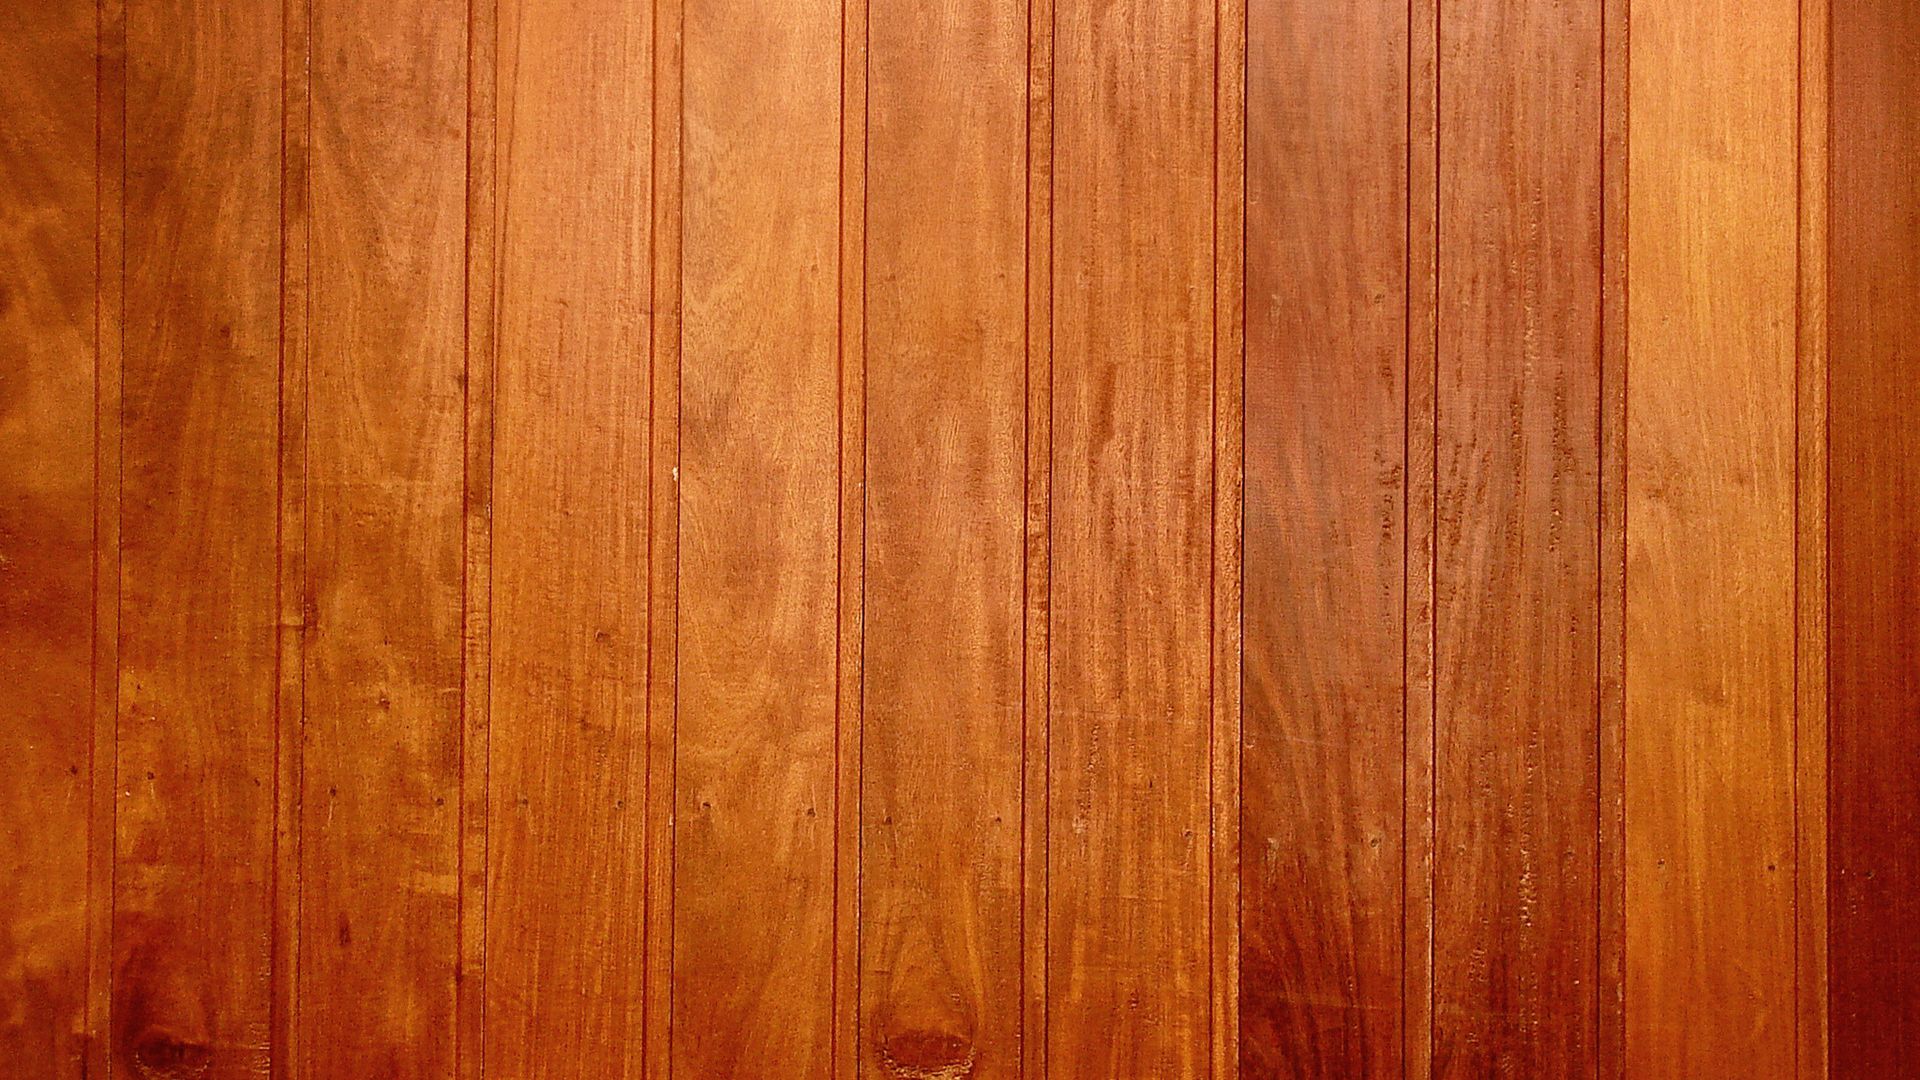 Được sử dụng rộng rãi trong thiết kế nội thất, các hình ảnh về bề mặt gỗ vân còn được xem như là một phong cách trang trí đầy sáng tạo. Hãy cùng chiêm ngưỡng bức ảnh về bề mặt gỗ này và cảm nhận những trải nghiệm thú vị!